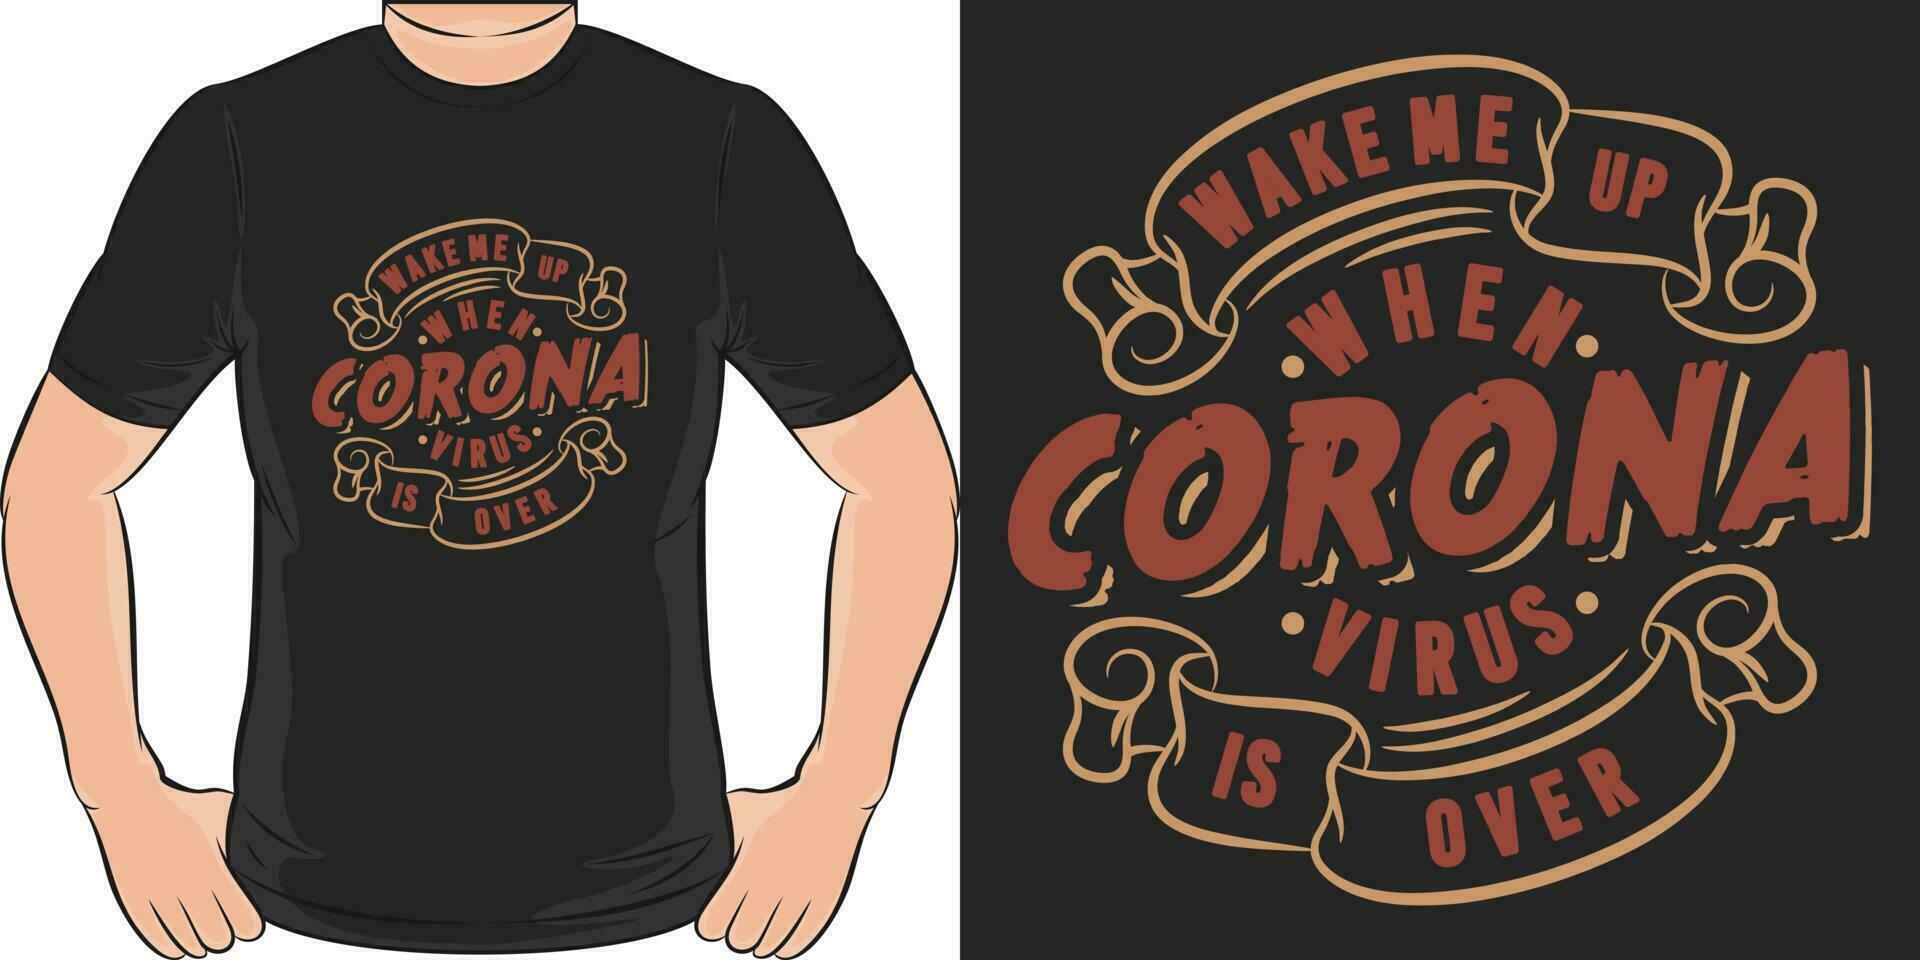 aufwachen mich oben wann Coronavirus ist über, covid-19 Zitat T-Shirt Design. vektor